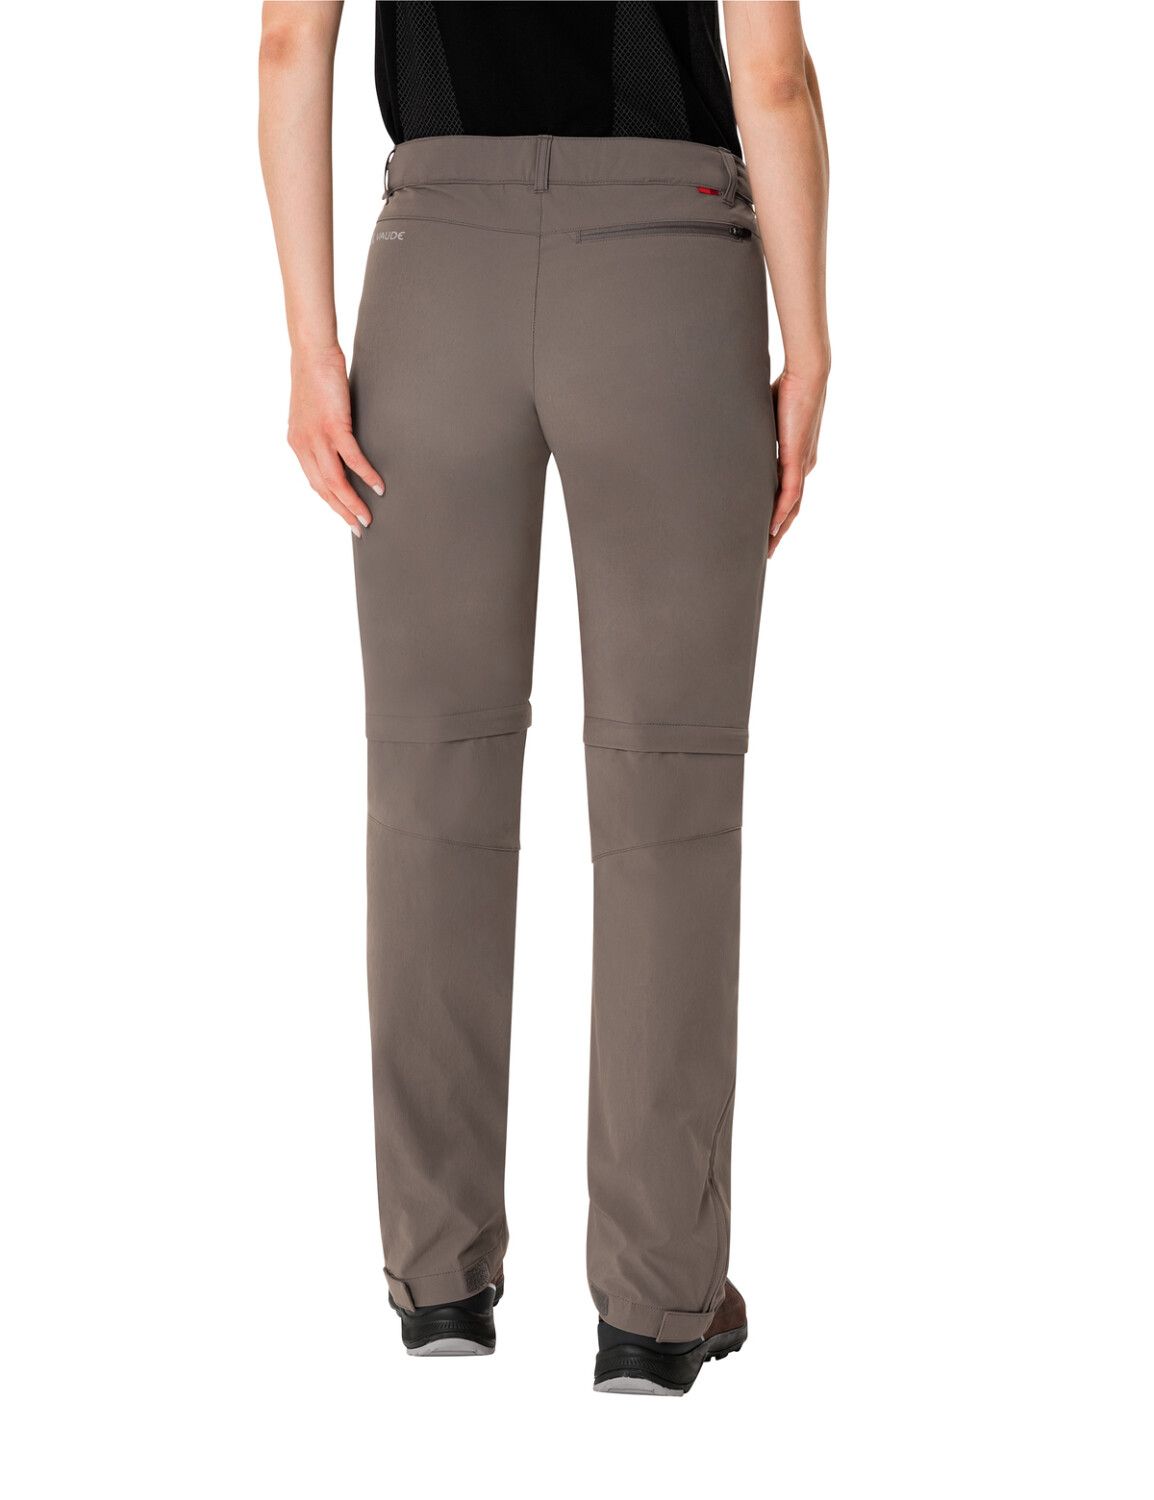 VAUDE Women's Farley Stretch ZO T-Zip Pants (Bild 20)